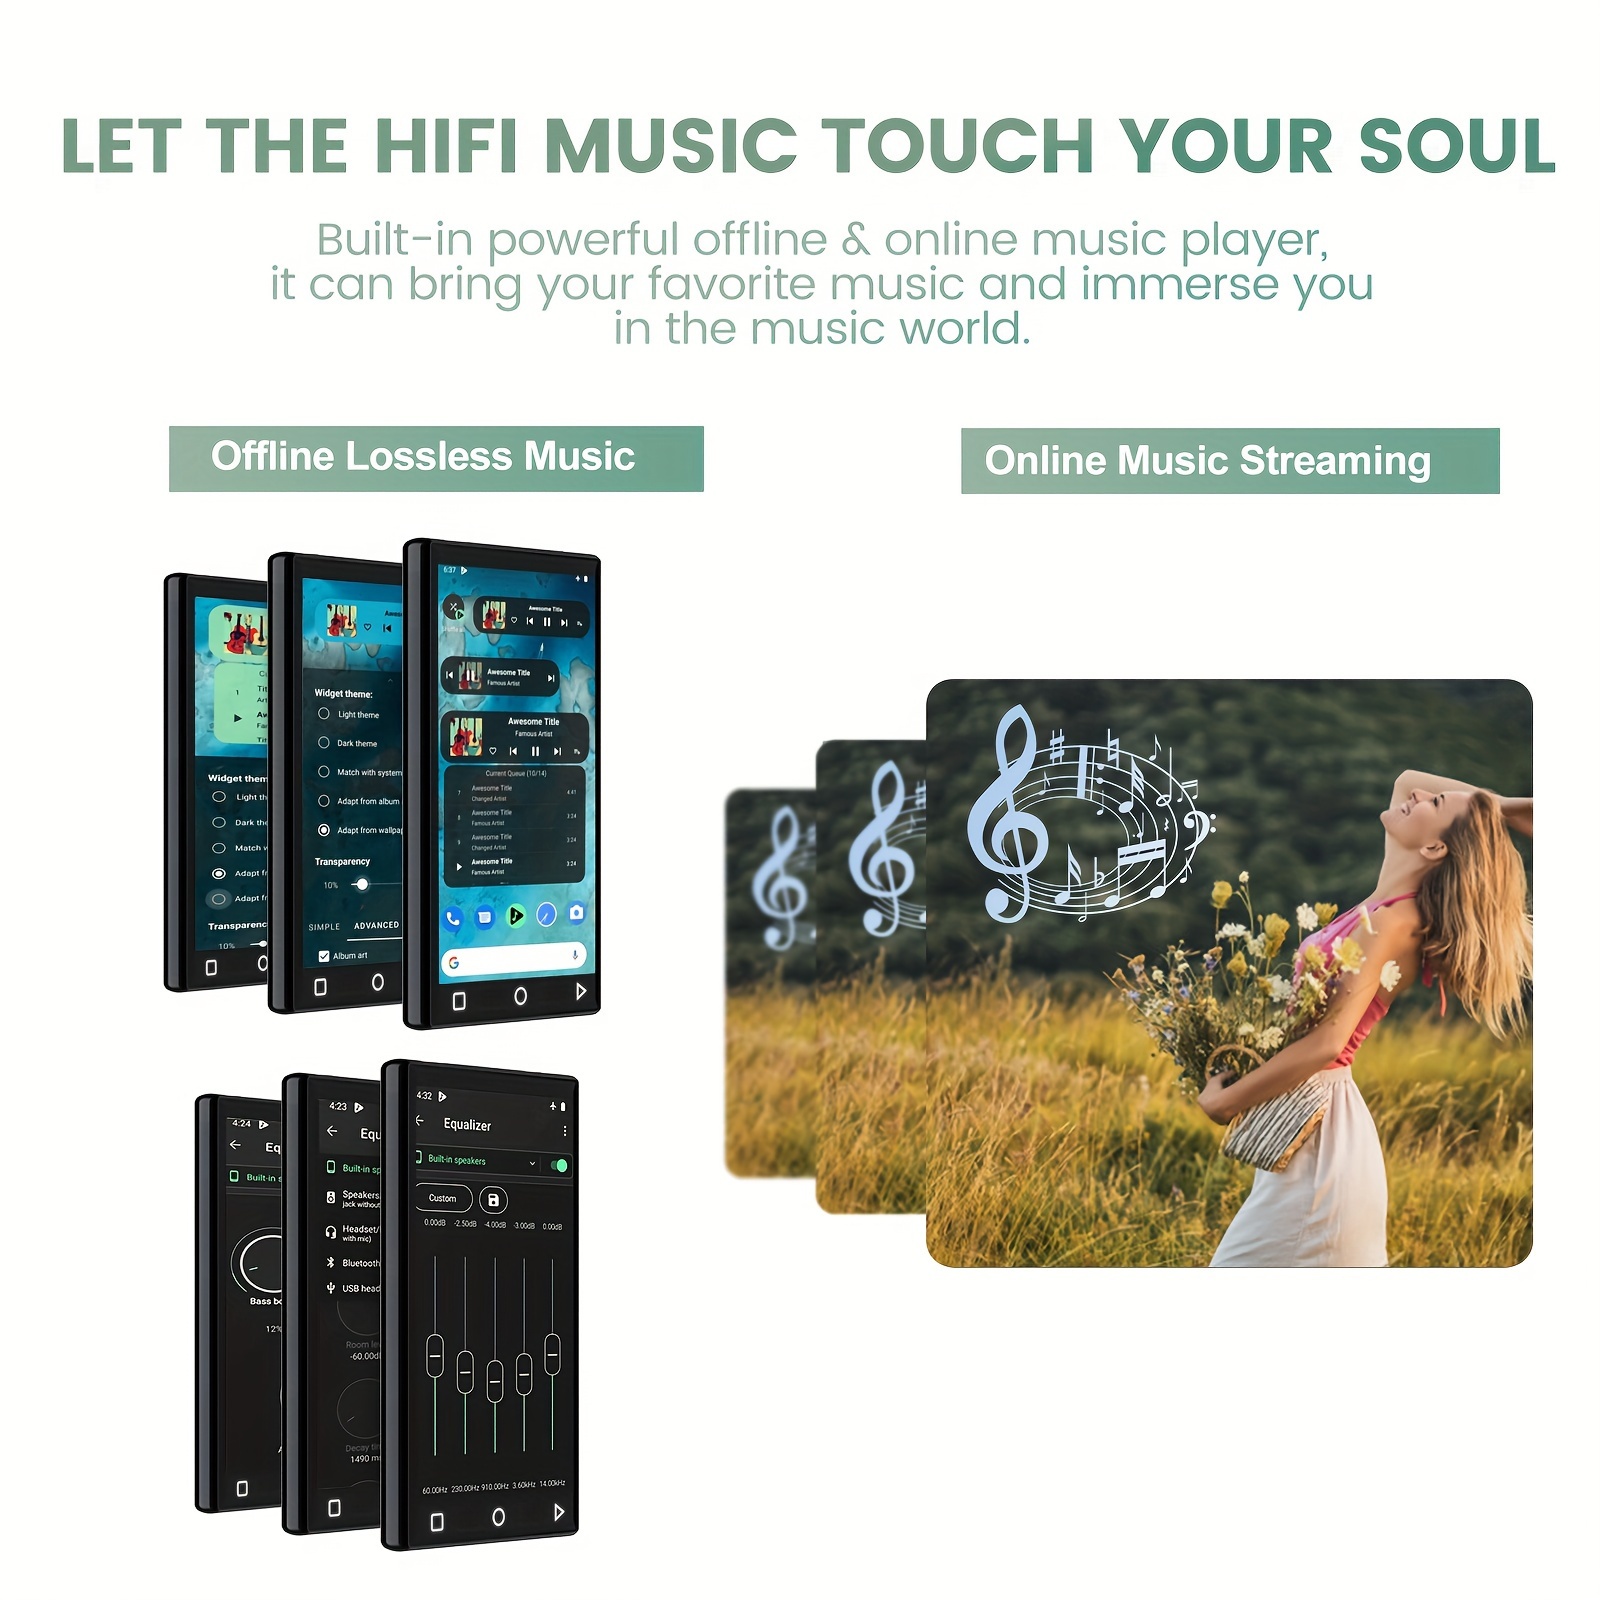 Players de música para Android: lista traz cinco boas opções de download